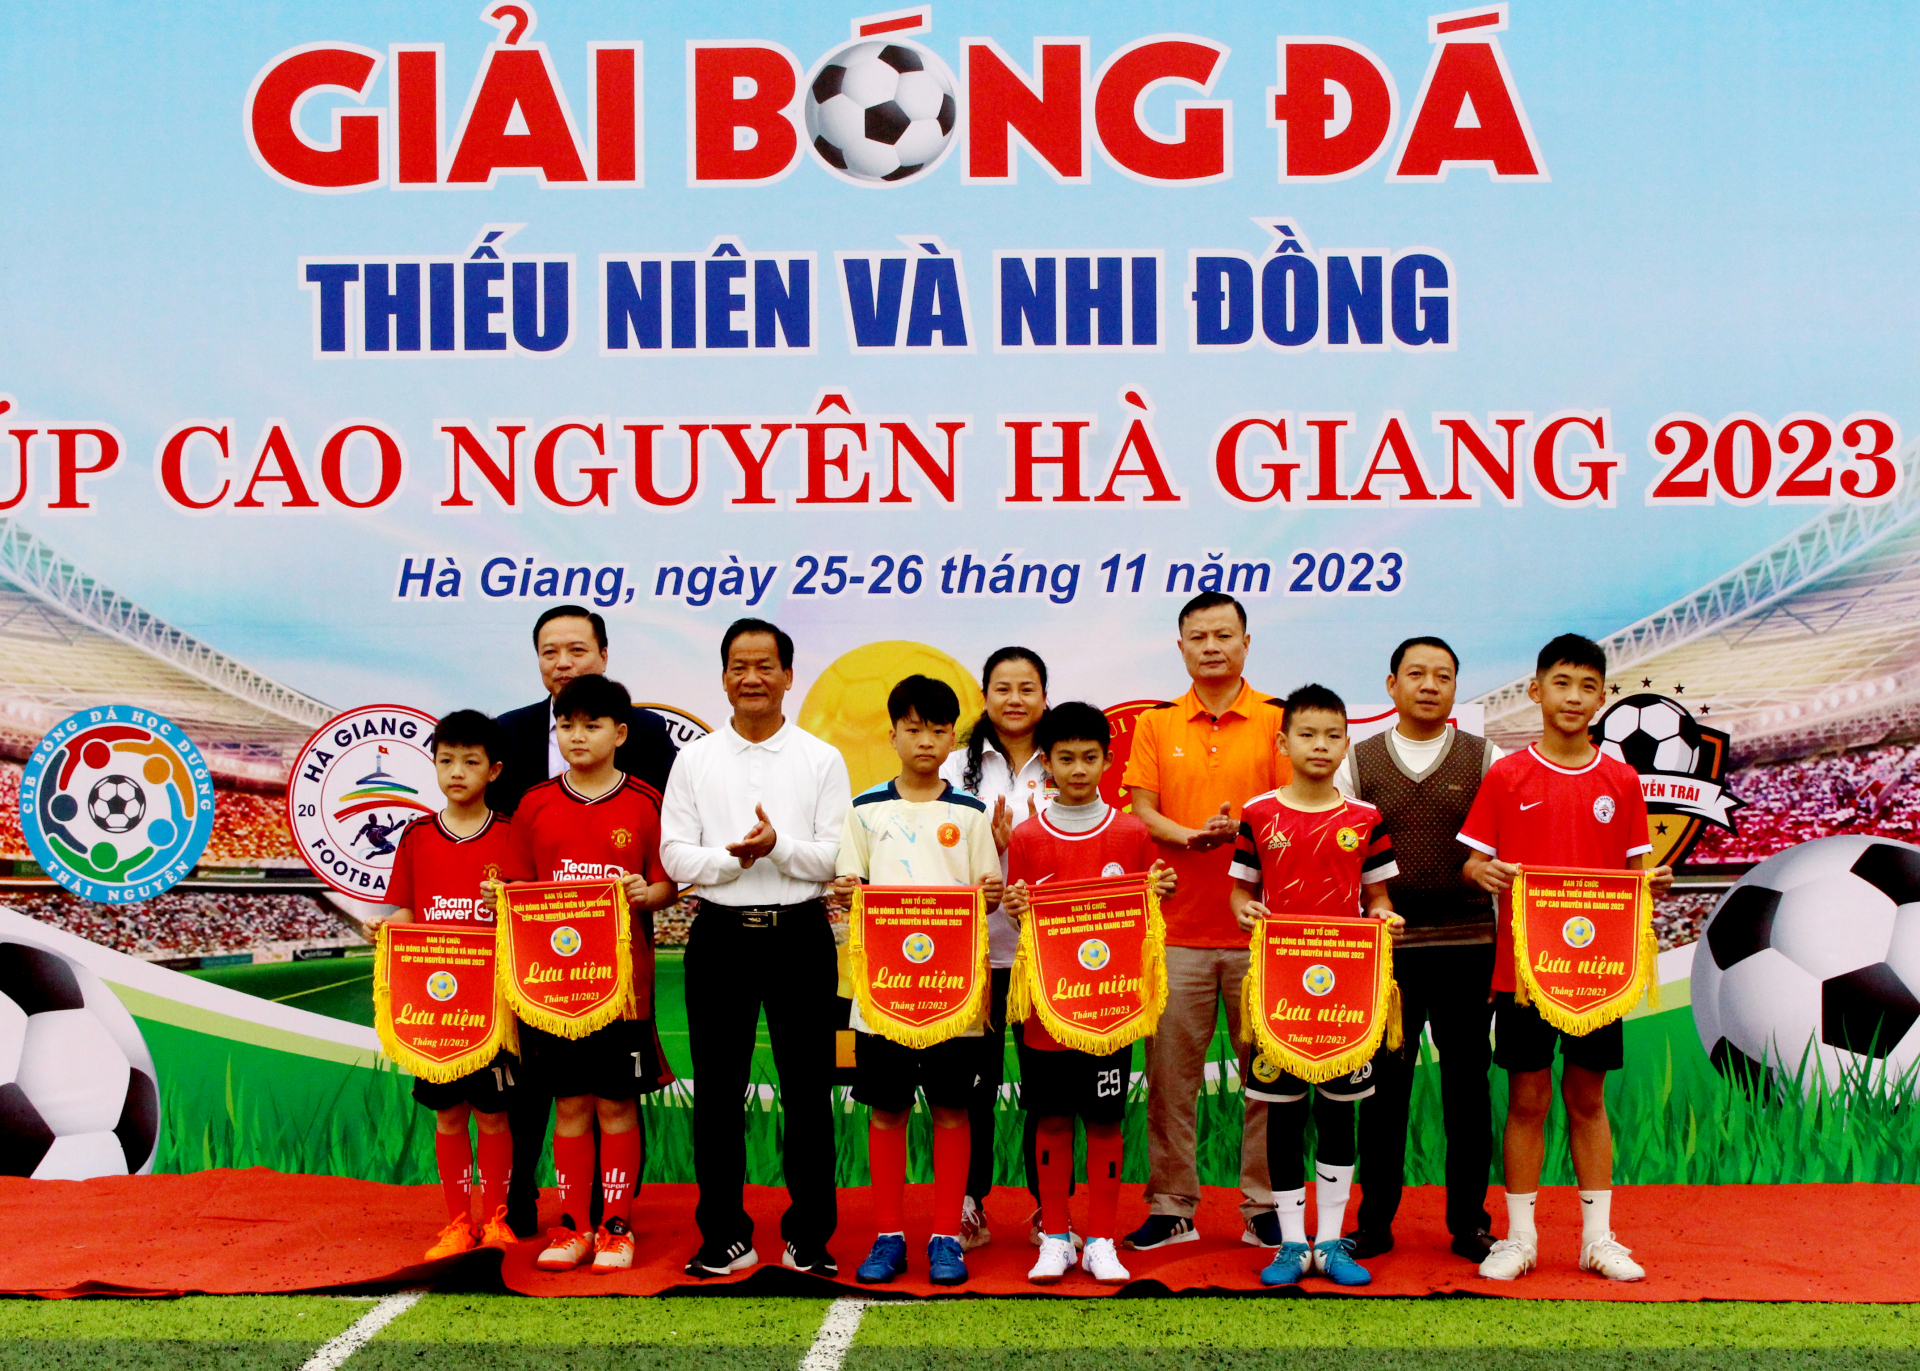 Các đại biểu trao cờ lưu niệm cho các đội tham gia Giải bóng đá Thiếu niên và Nhi đồng tranh cúp Cao nguyên năm 2023.